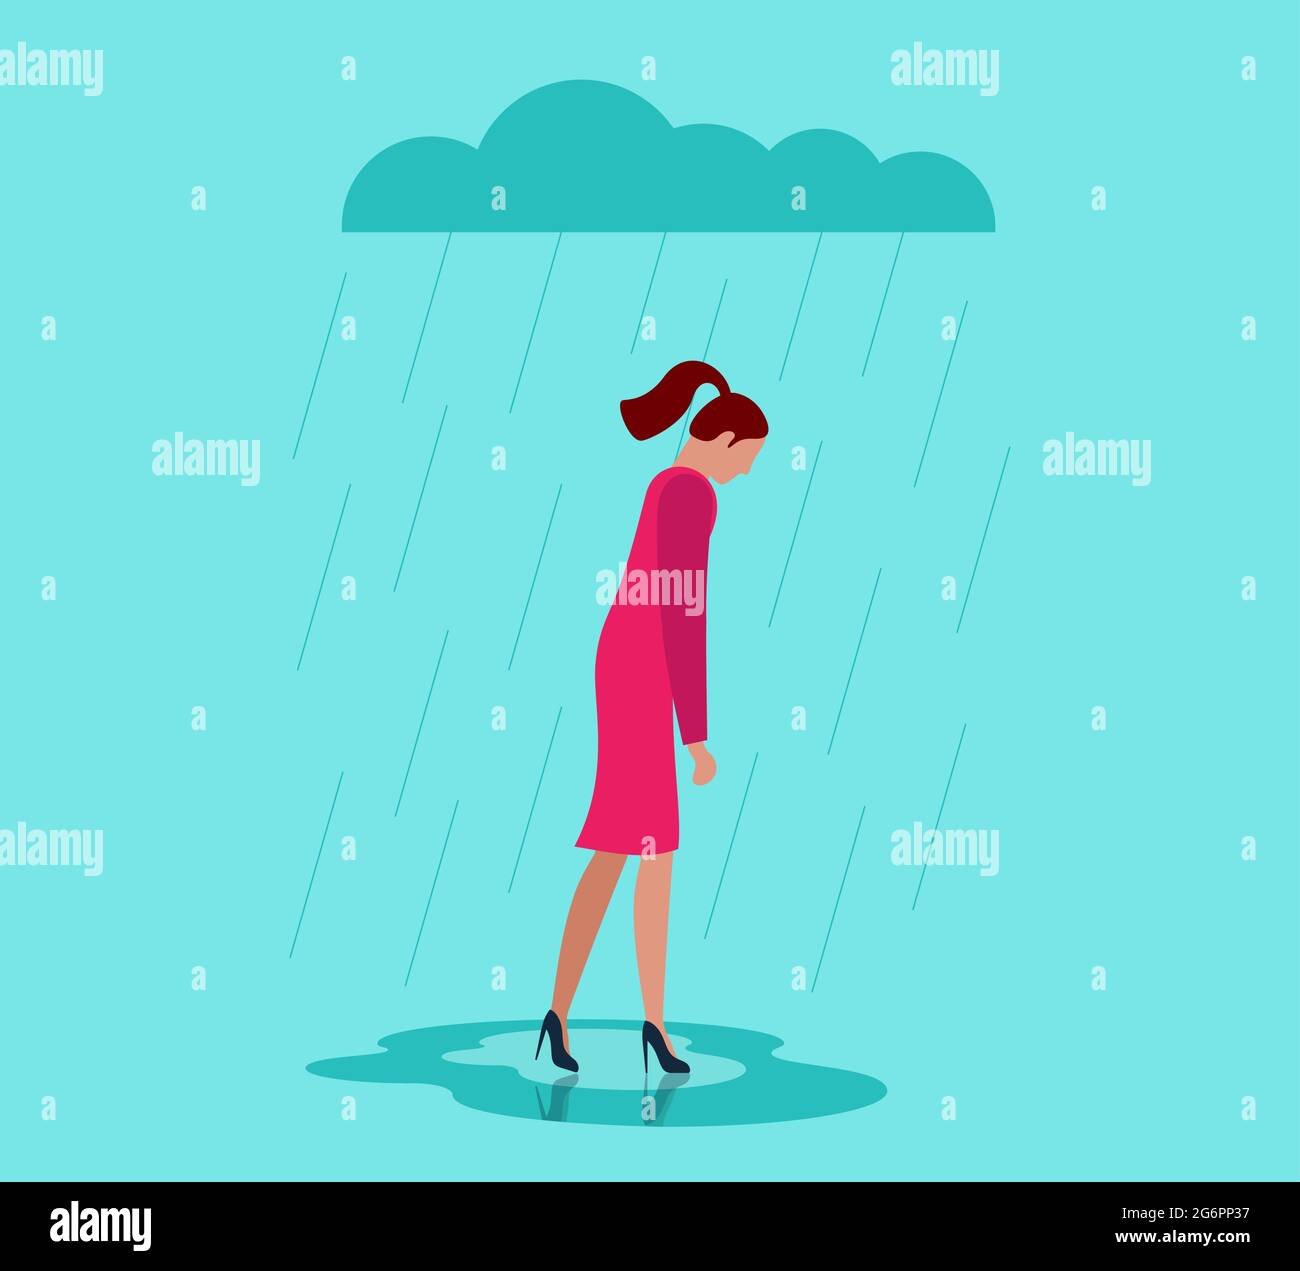 Infeliz soledad deprimida triste mujer en estrés con emoción negativa problema caminar bajo la nube de lluvia. Depresión sola de la persona femenina perdedora. La soledad y las malas emociones en el concepto de las eps del tiempo nublado Ilustración del Vector